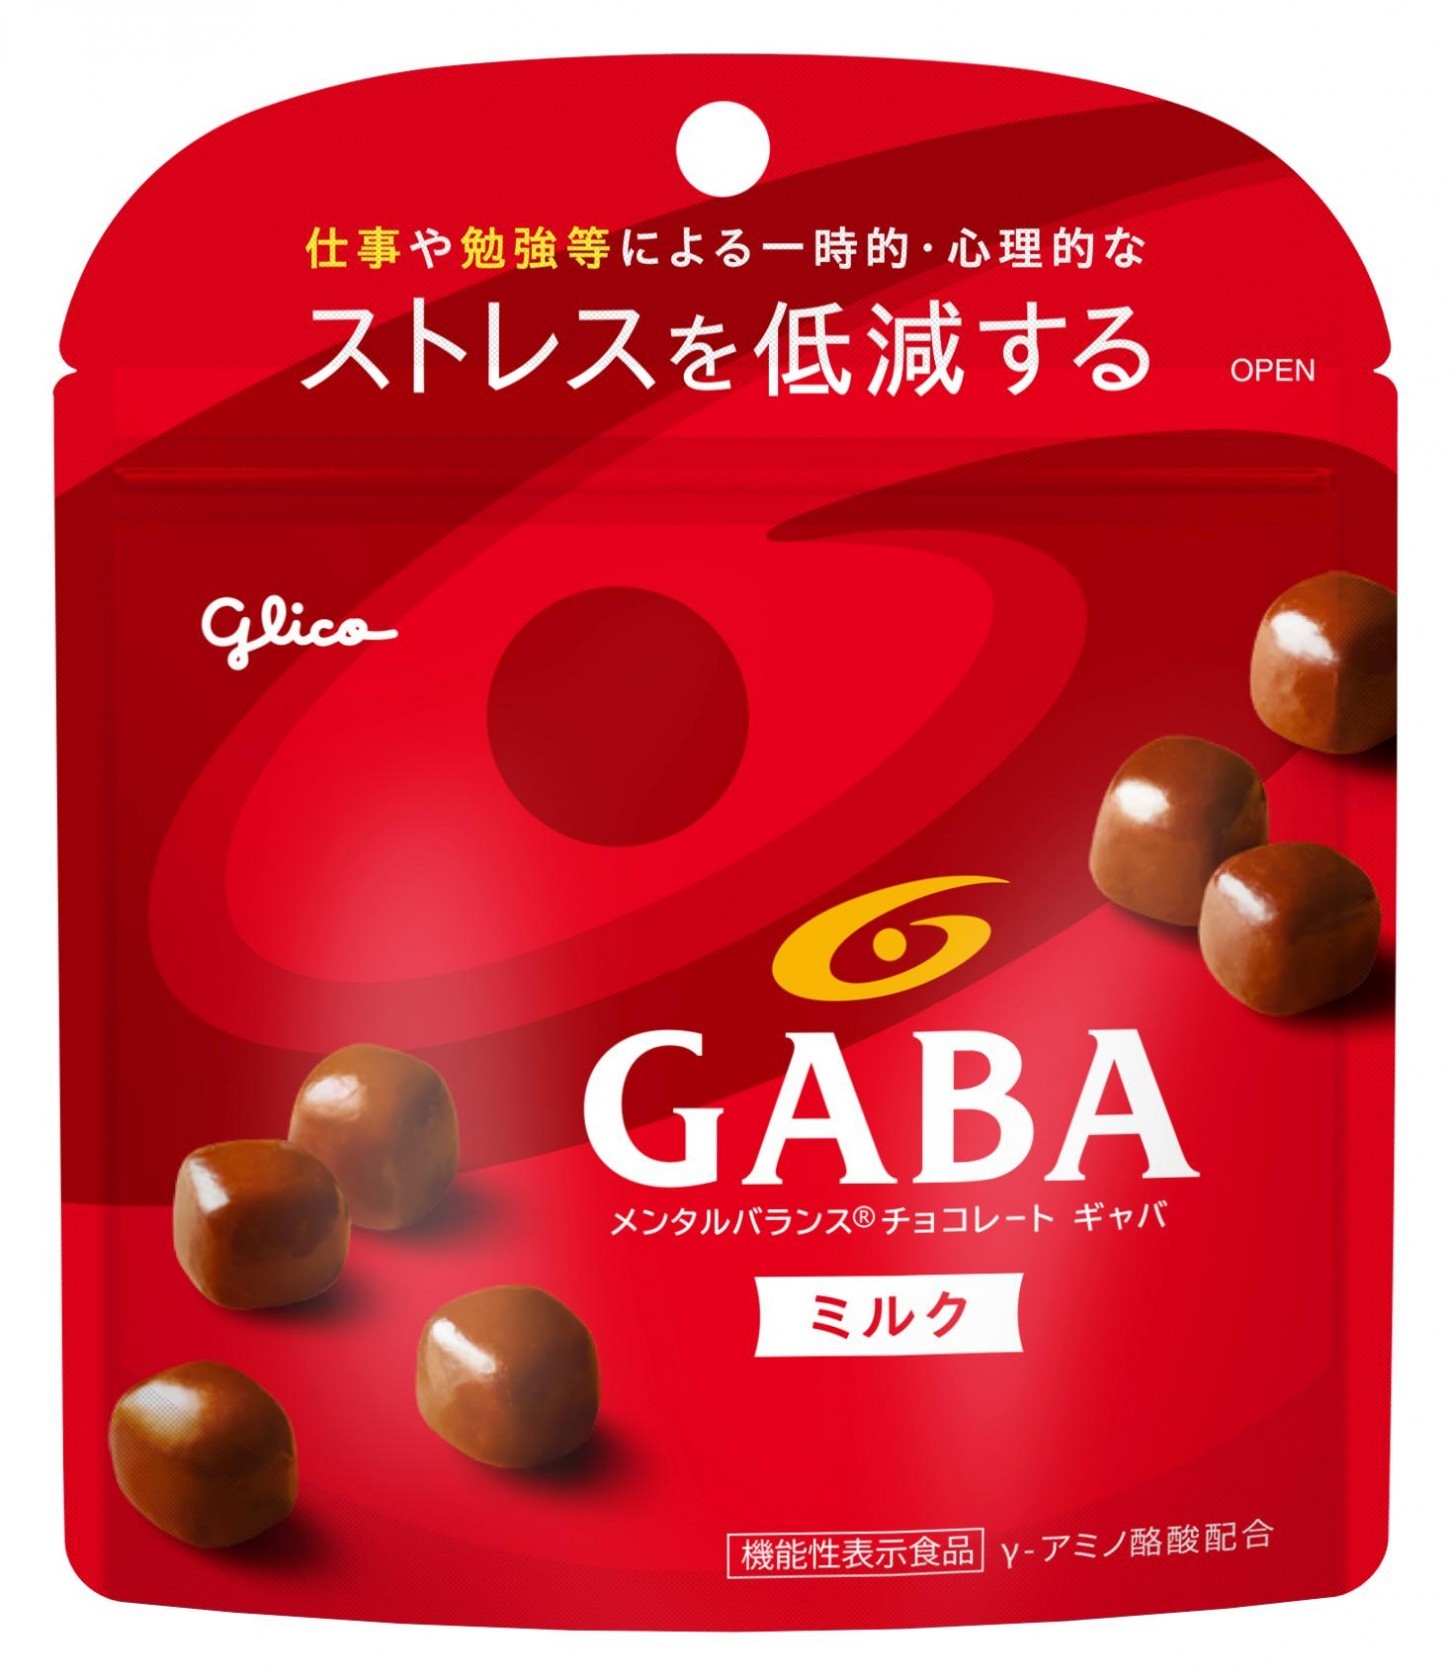 チョコレートの「GABA」ってあるじゃん？初めて食ってみたんだけど本当に気持ち落ち着かねえ？